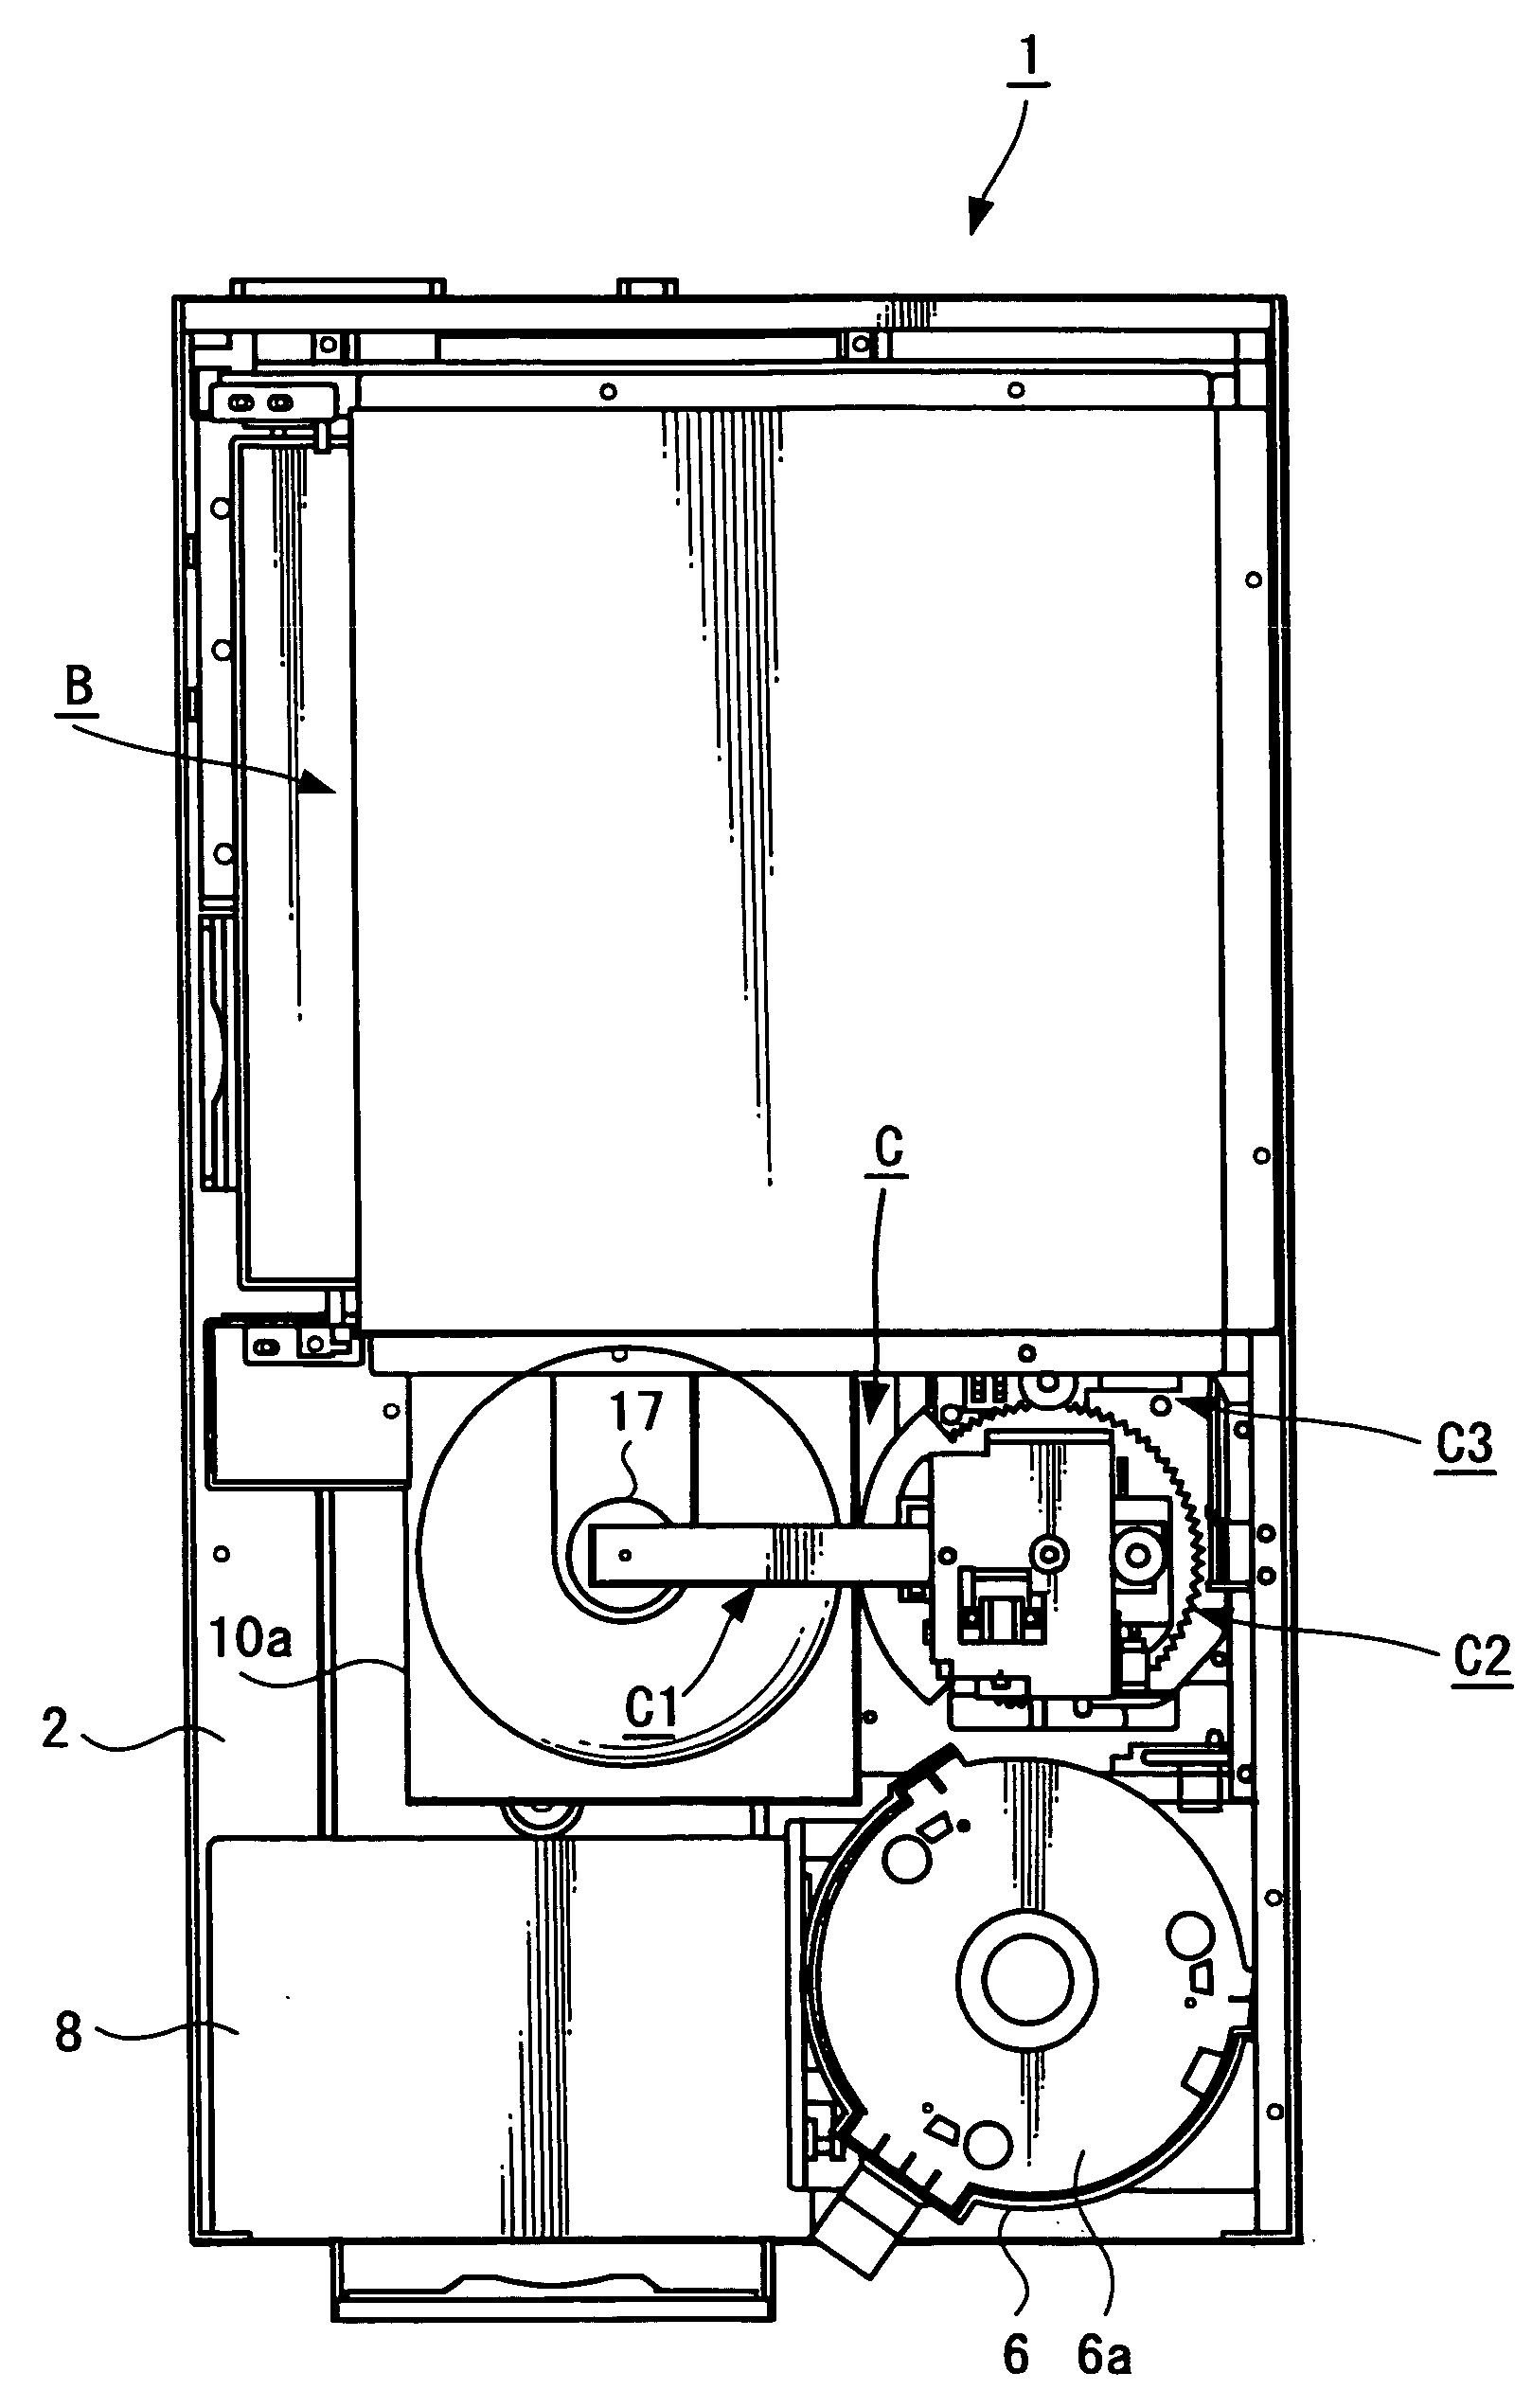 Disc processing apparatus